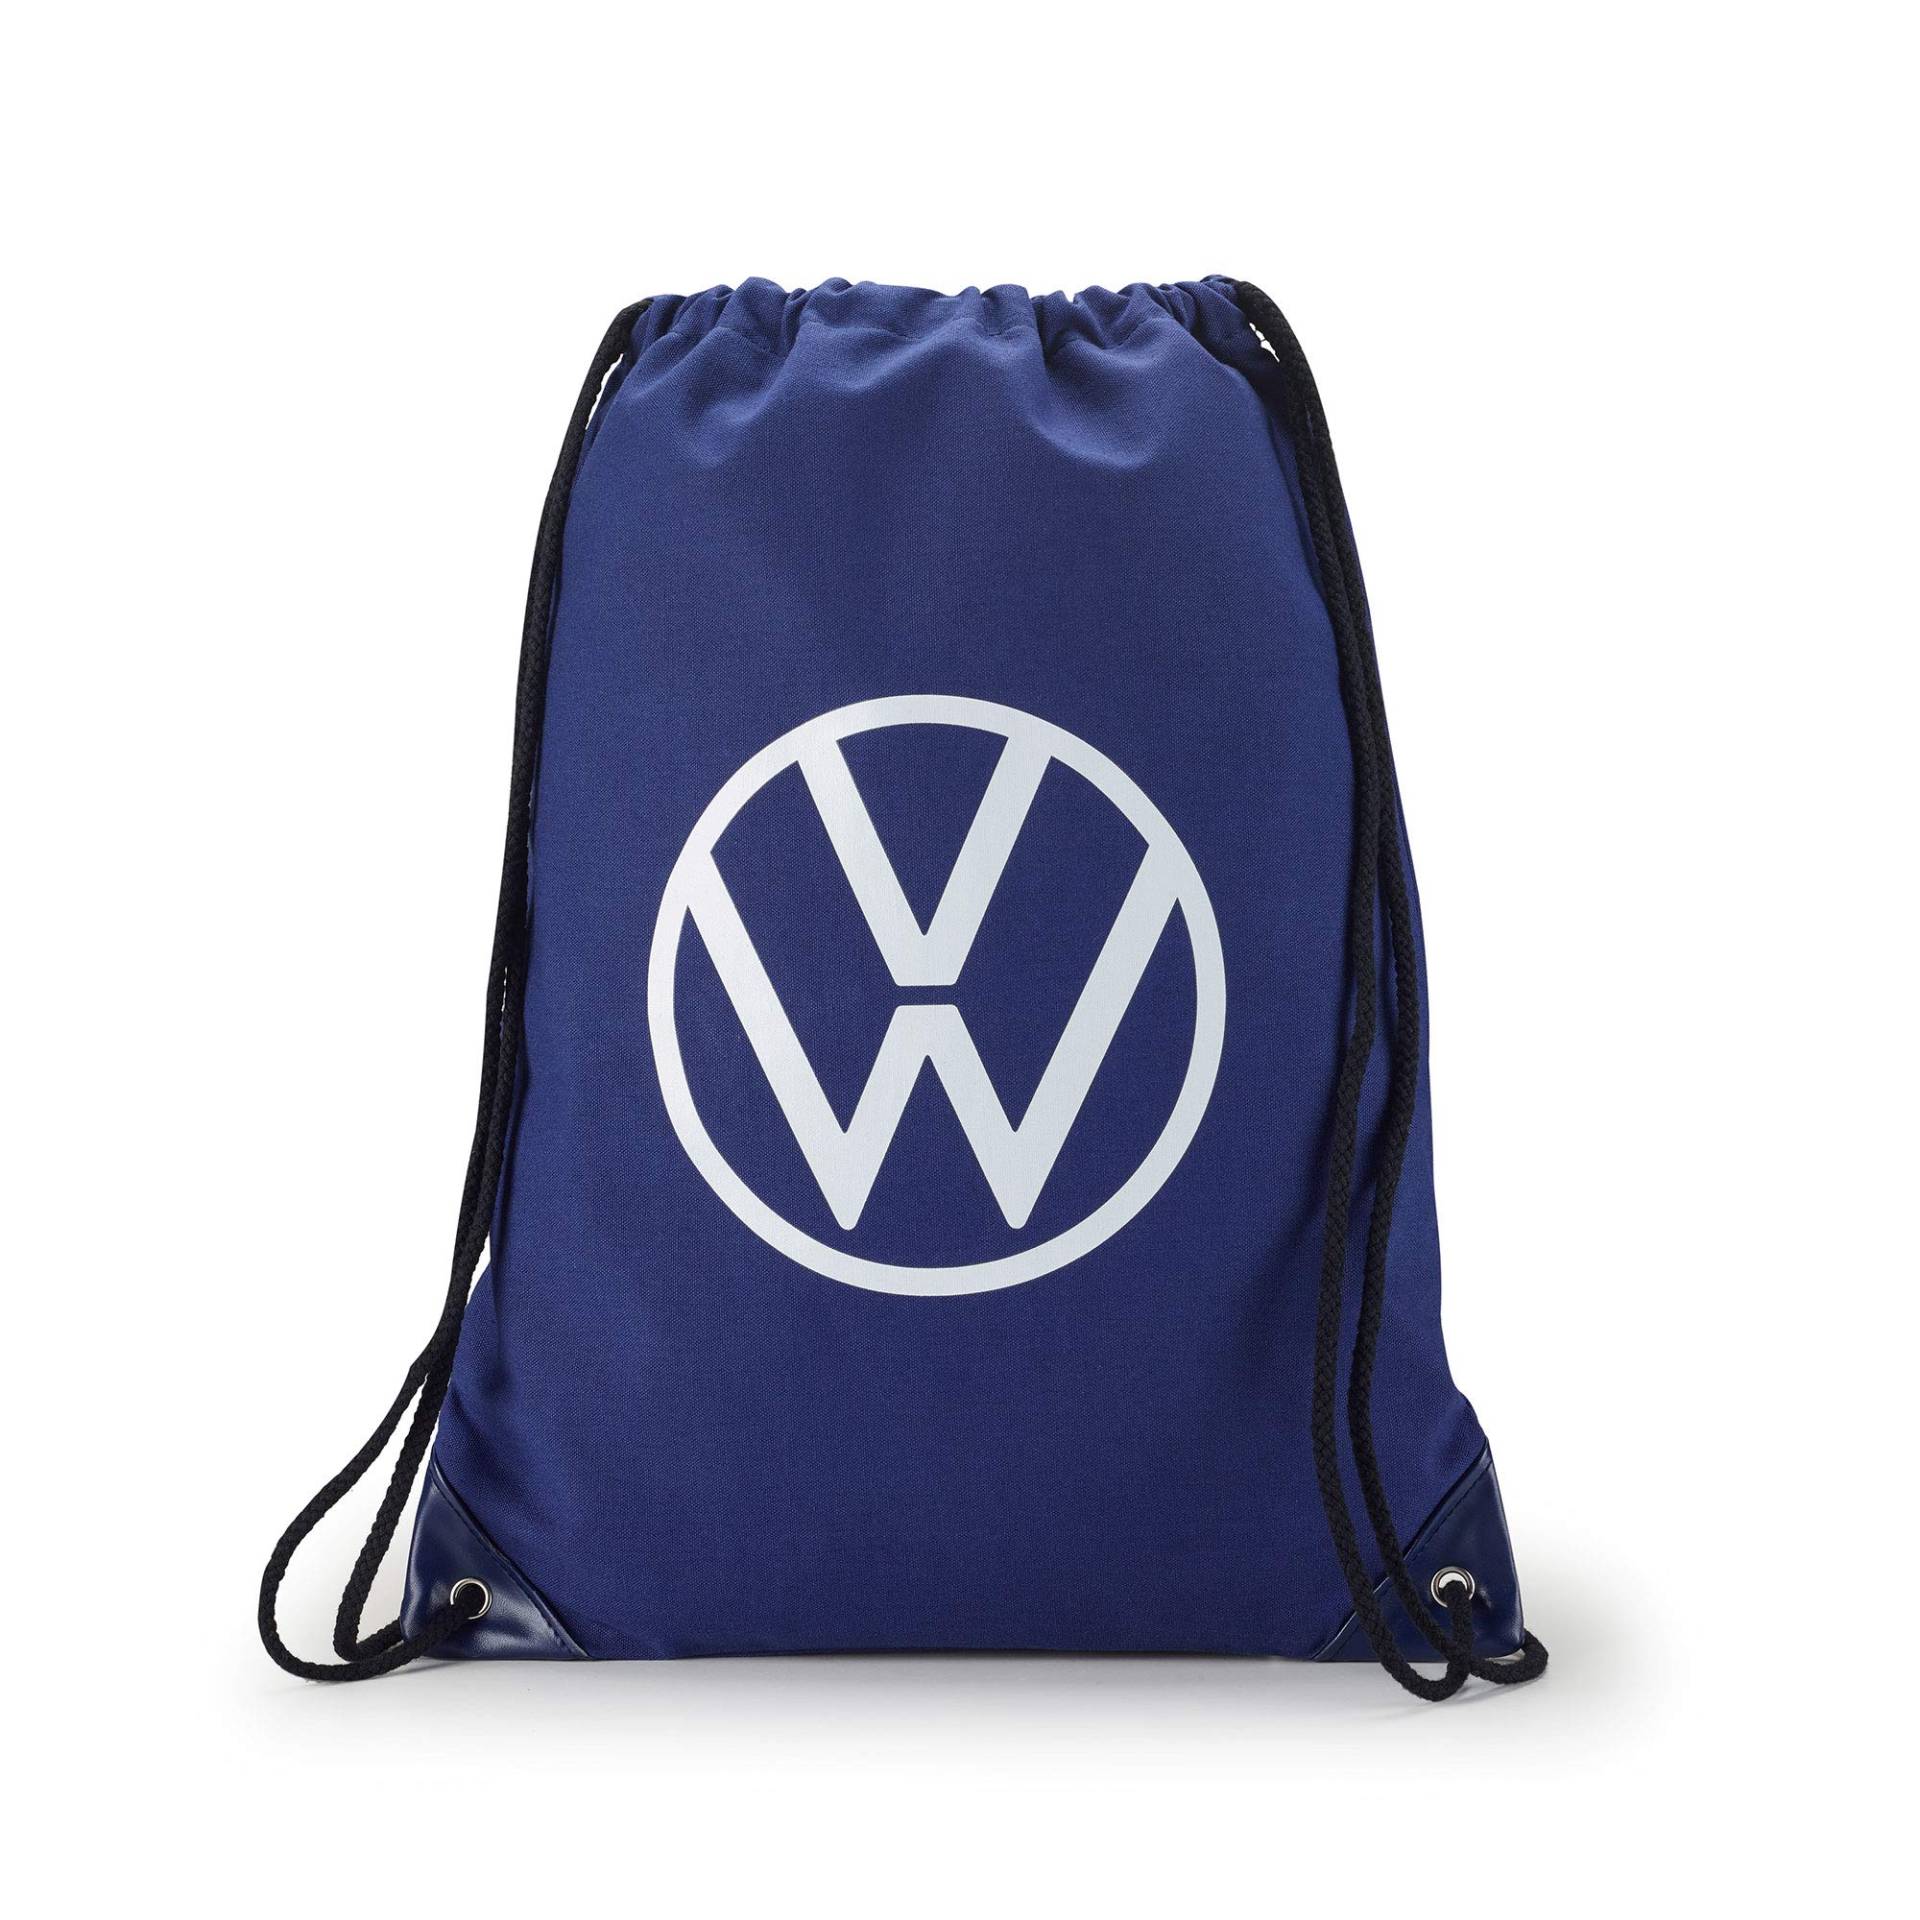 Volkswagen 000087318K Turnbeutel Sportbeutel Tasche Rucksack Beutel, mit neuem VW Logo, blau von Volkswagen